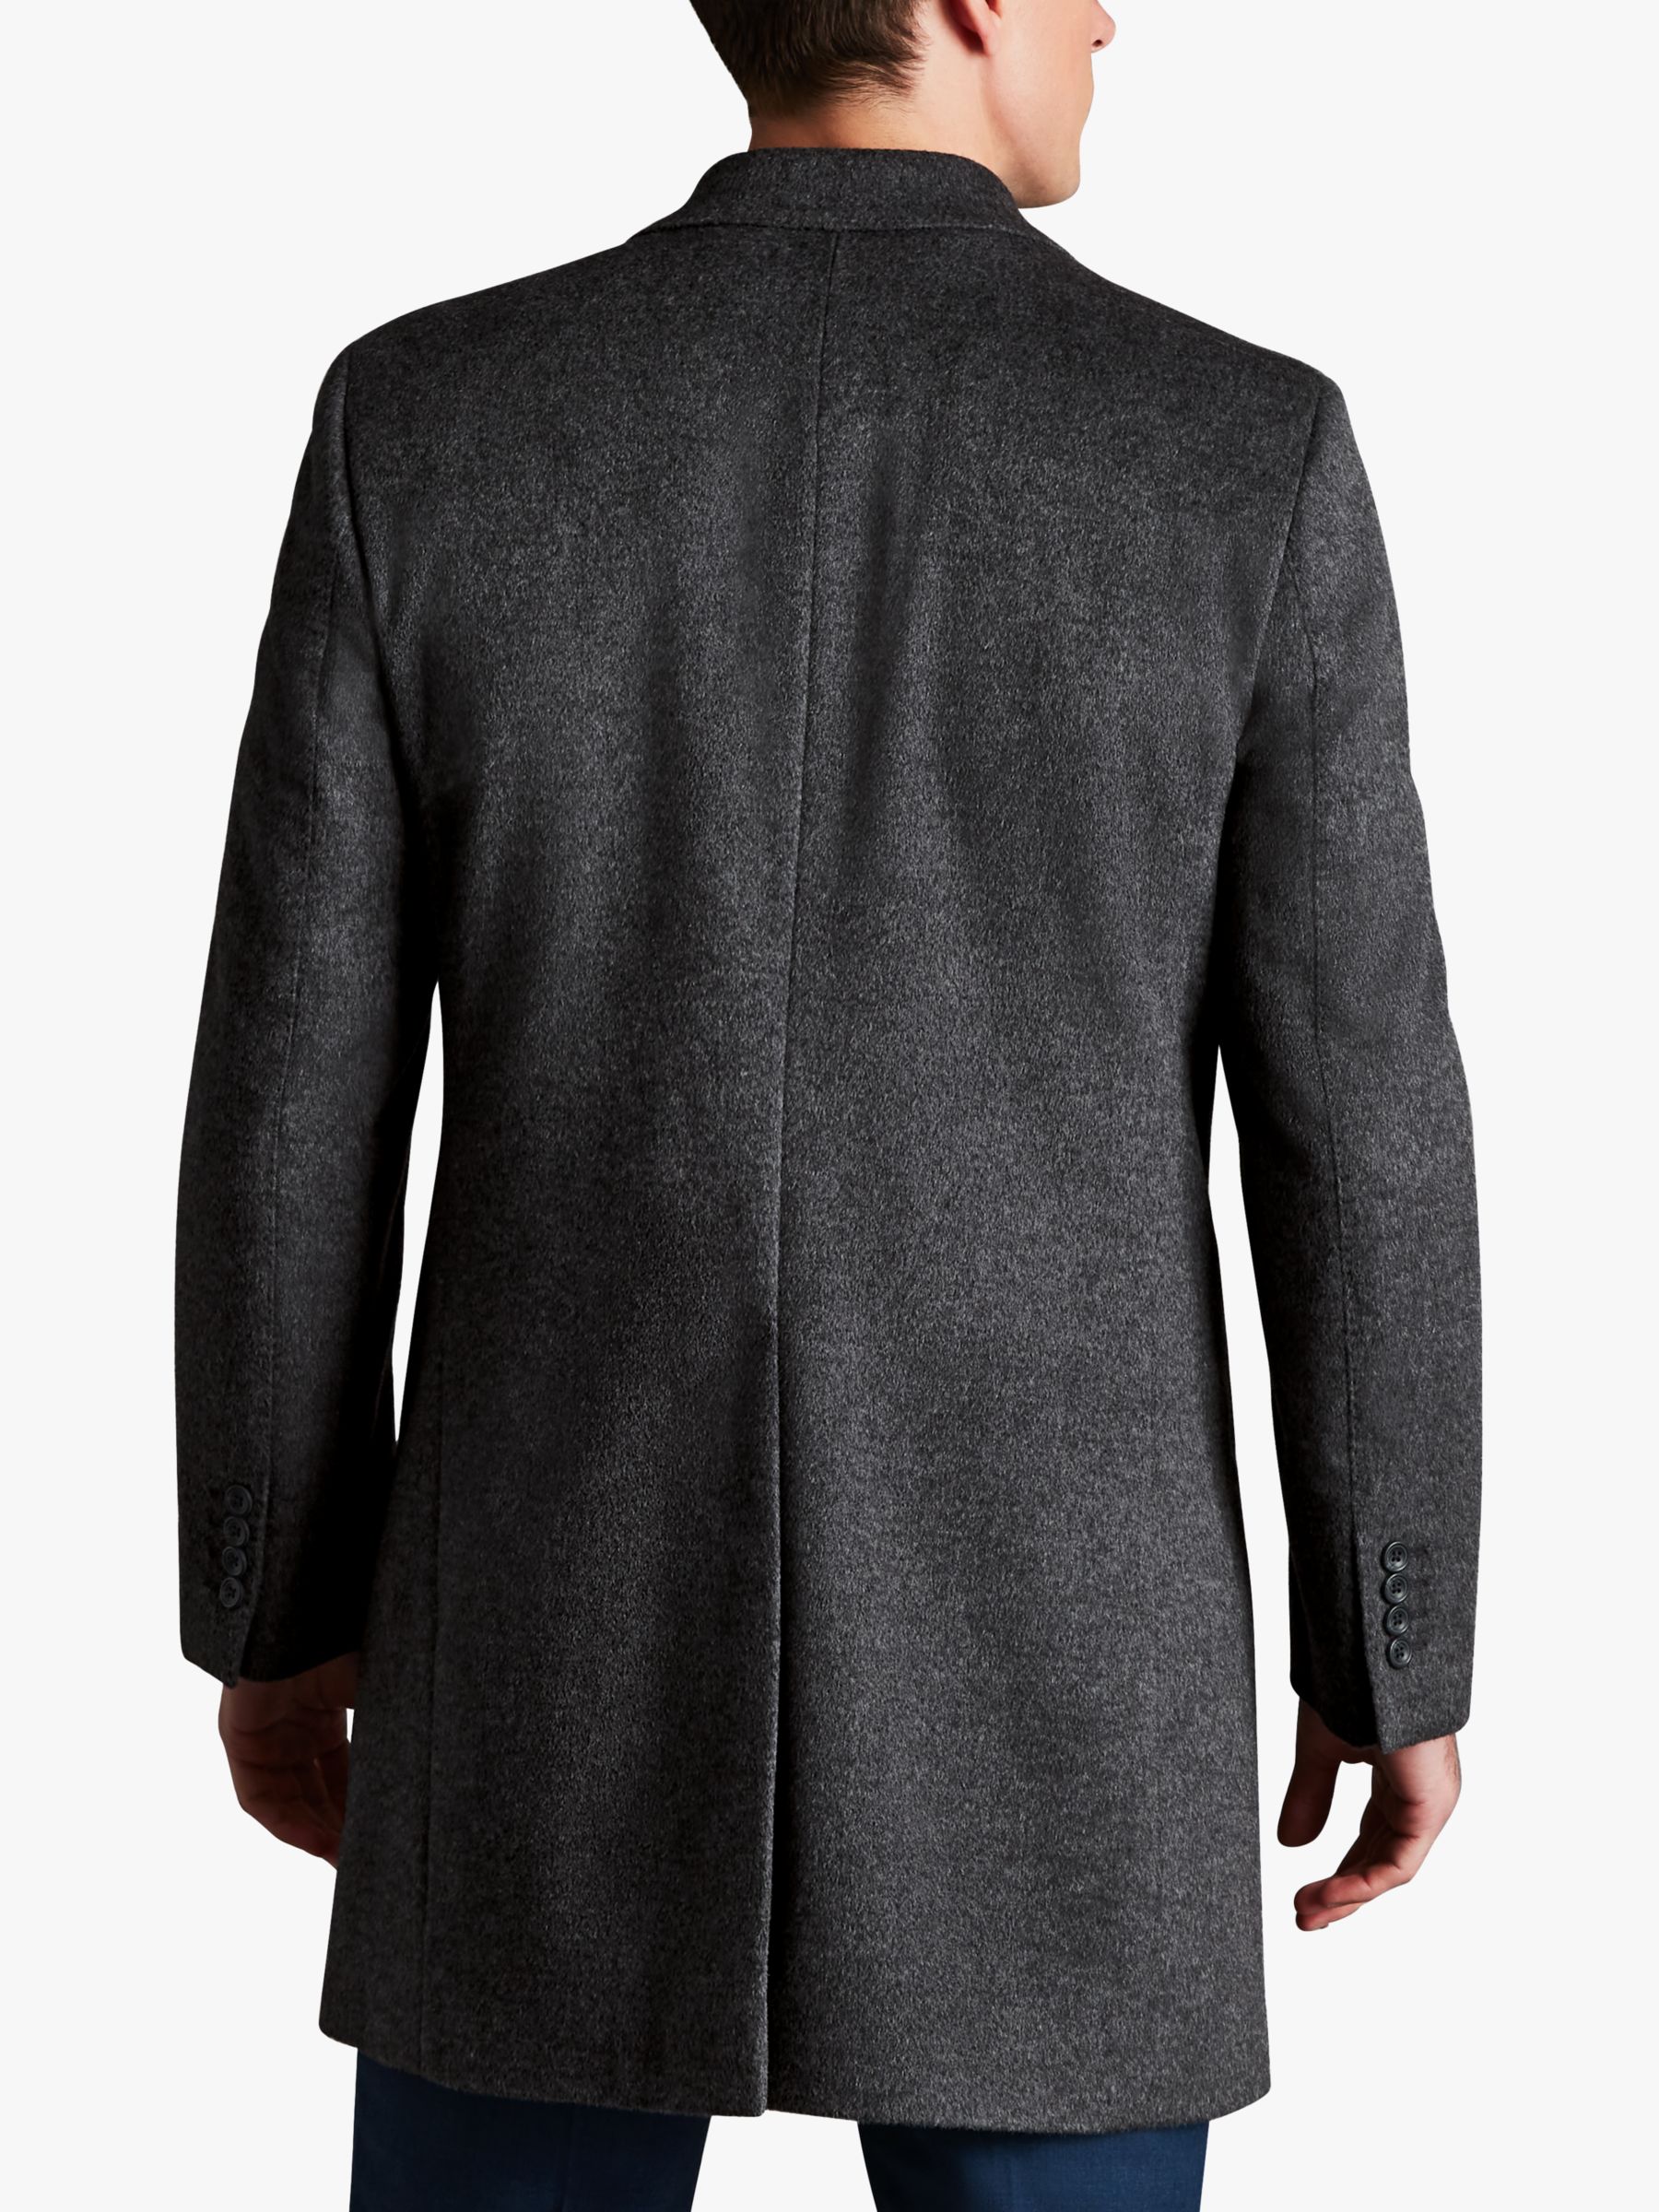 Charles Tyrwhitt Merino Wool Overcoat, Dark Grey at John Lewis & Partners